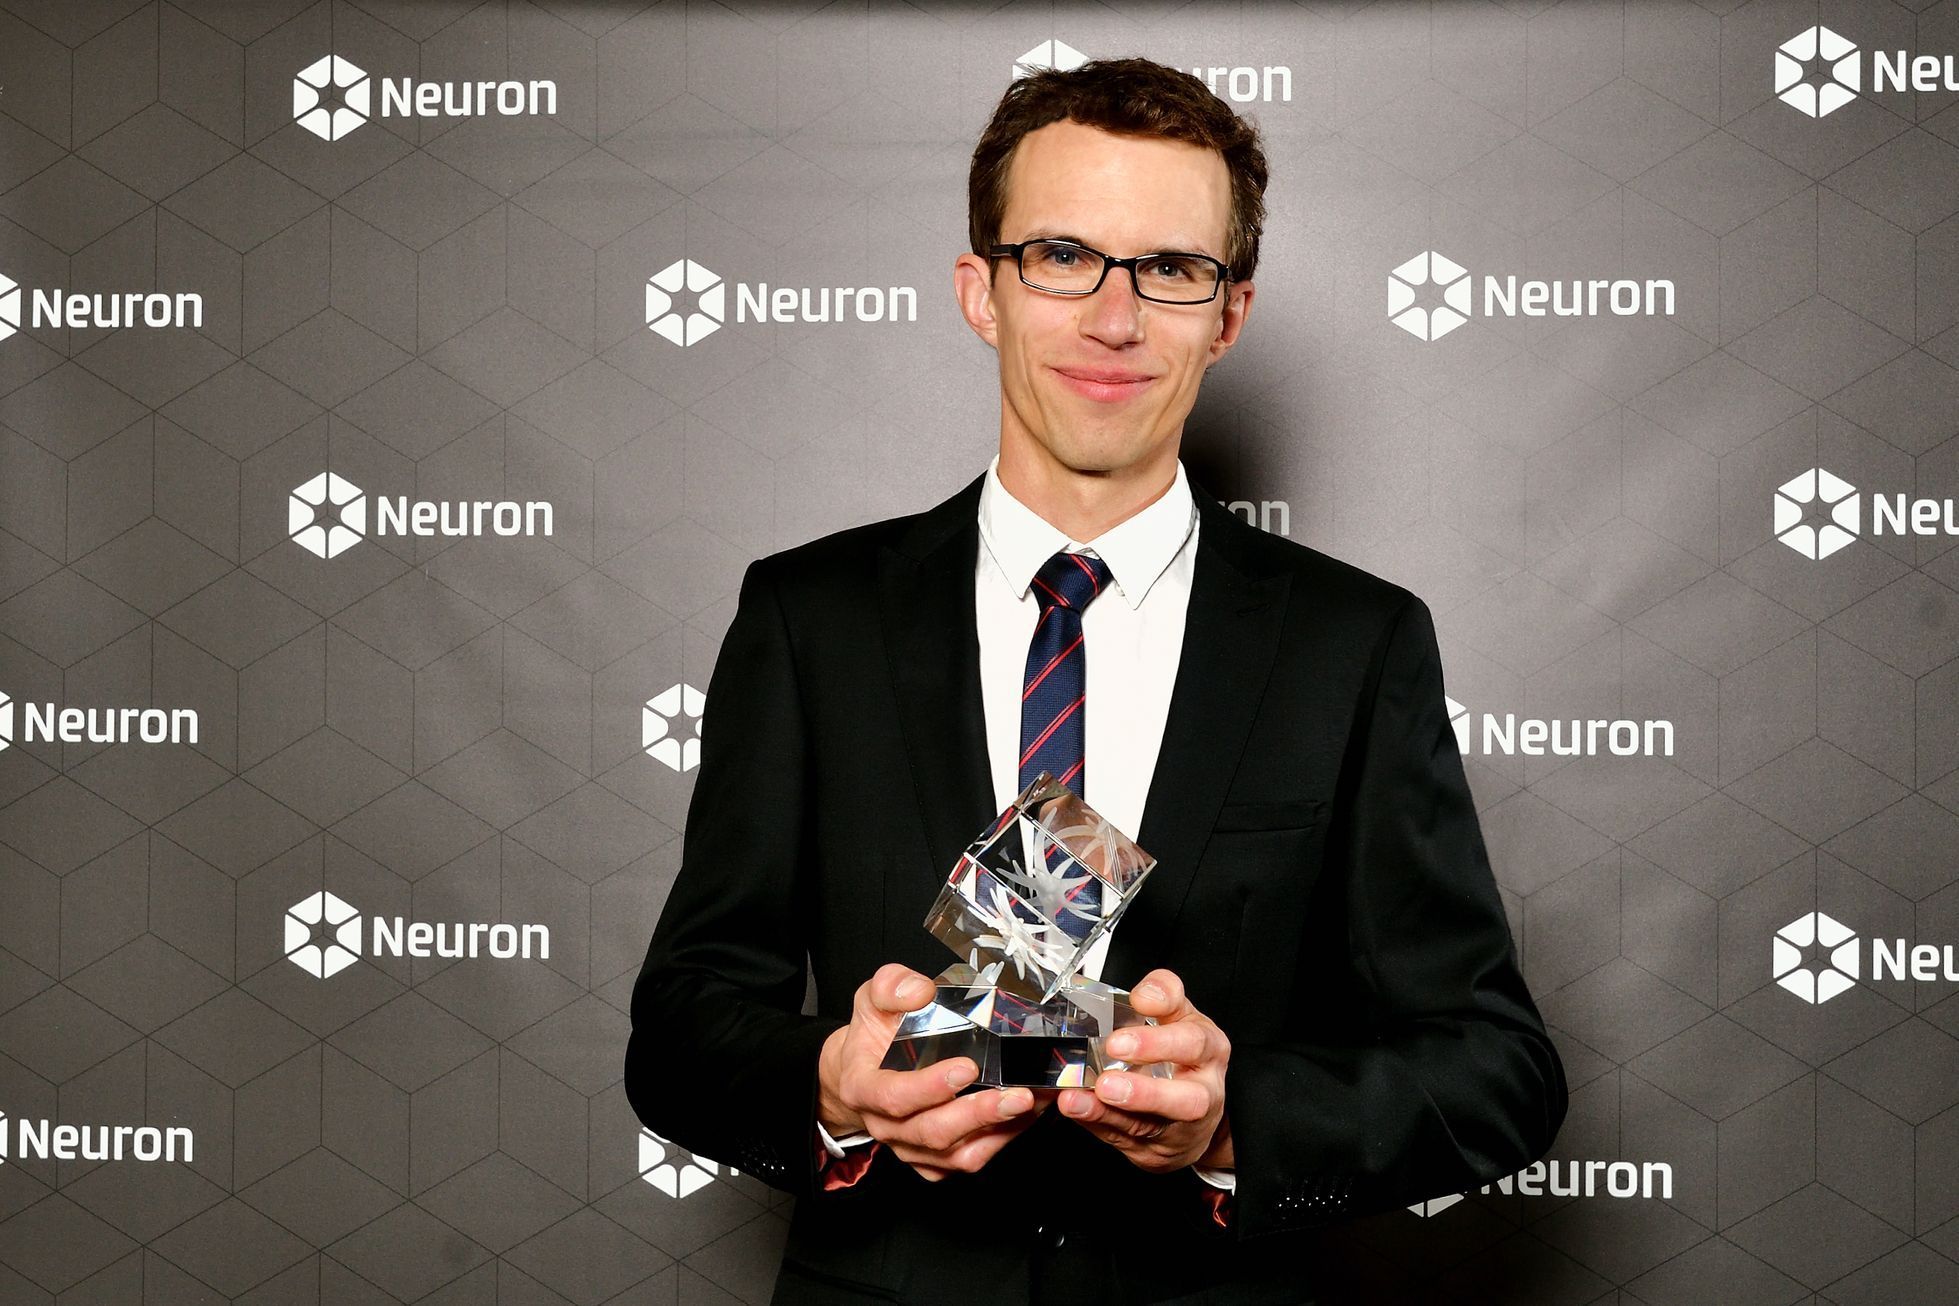 Ceny Neuron 2019 - přírodovědec Michal Šimíček